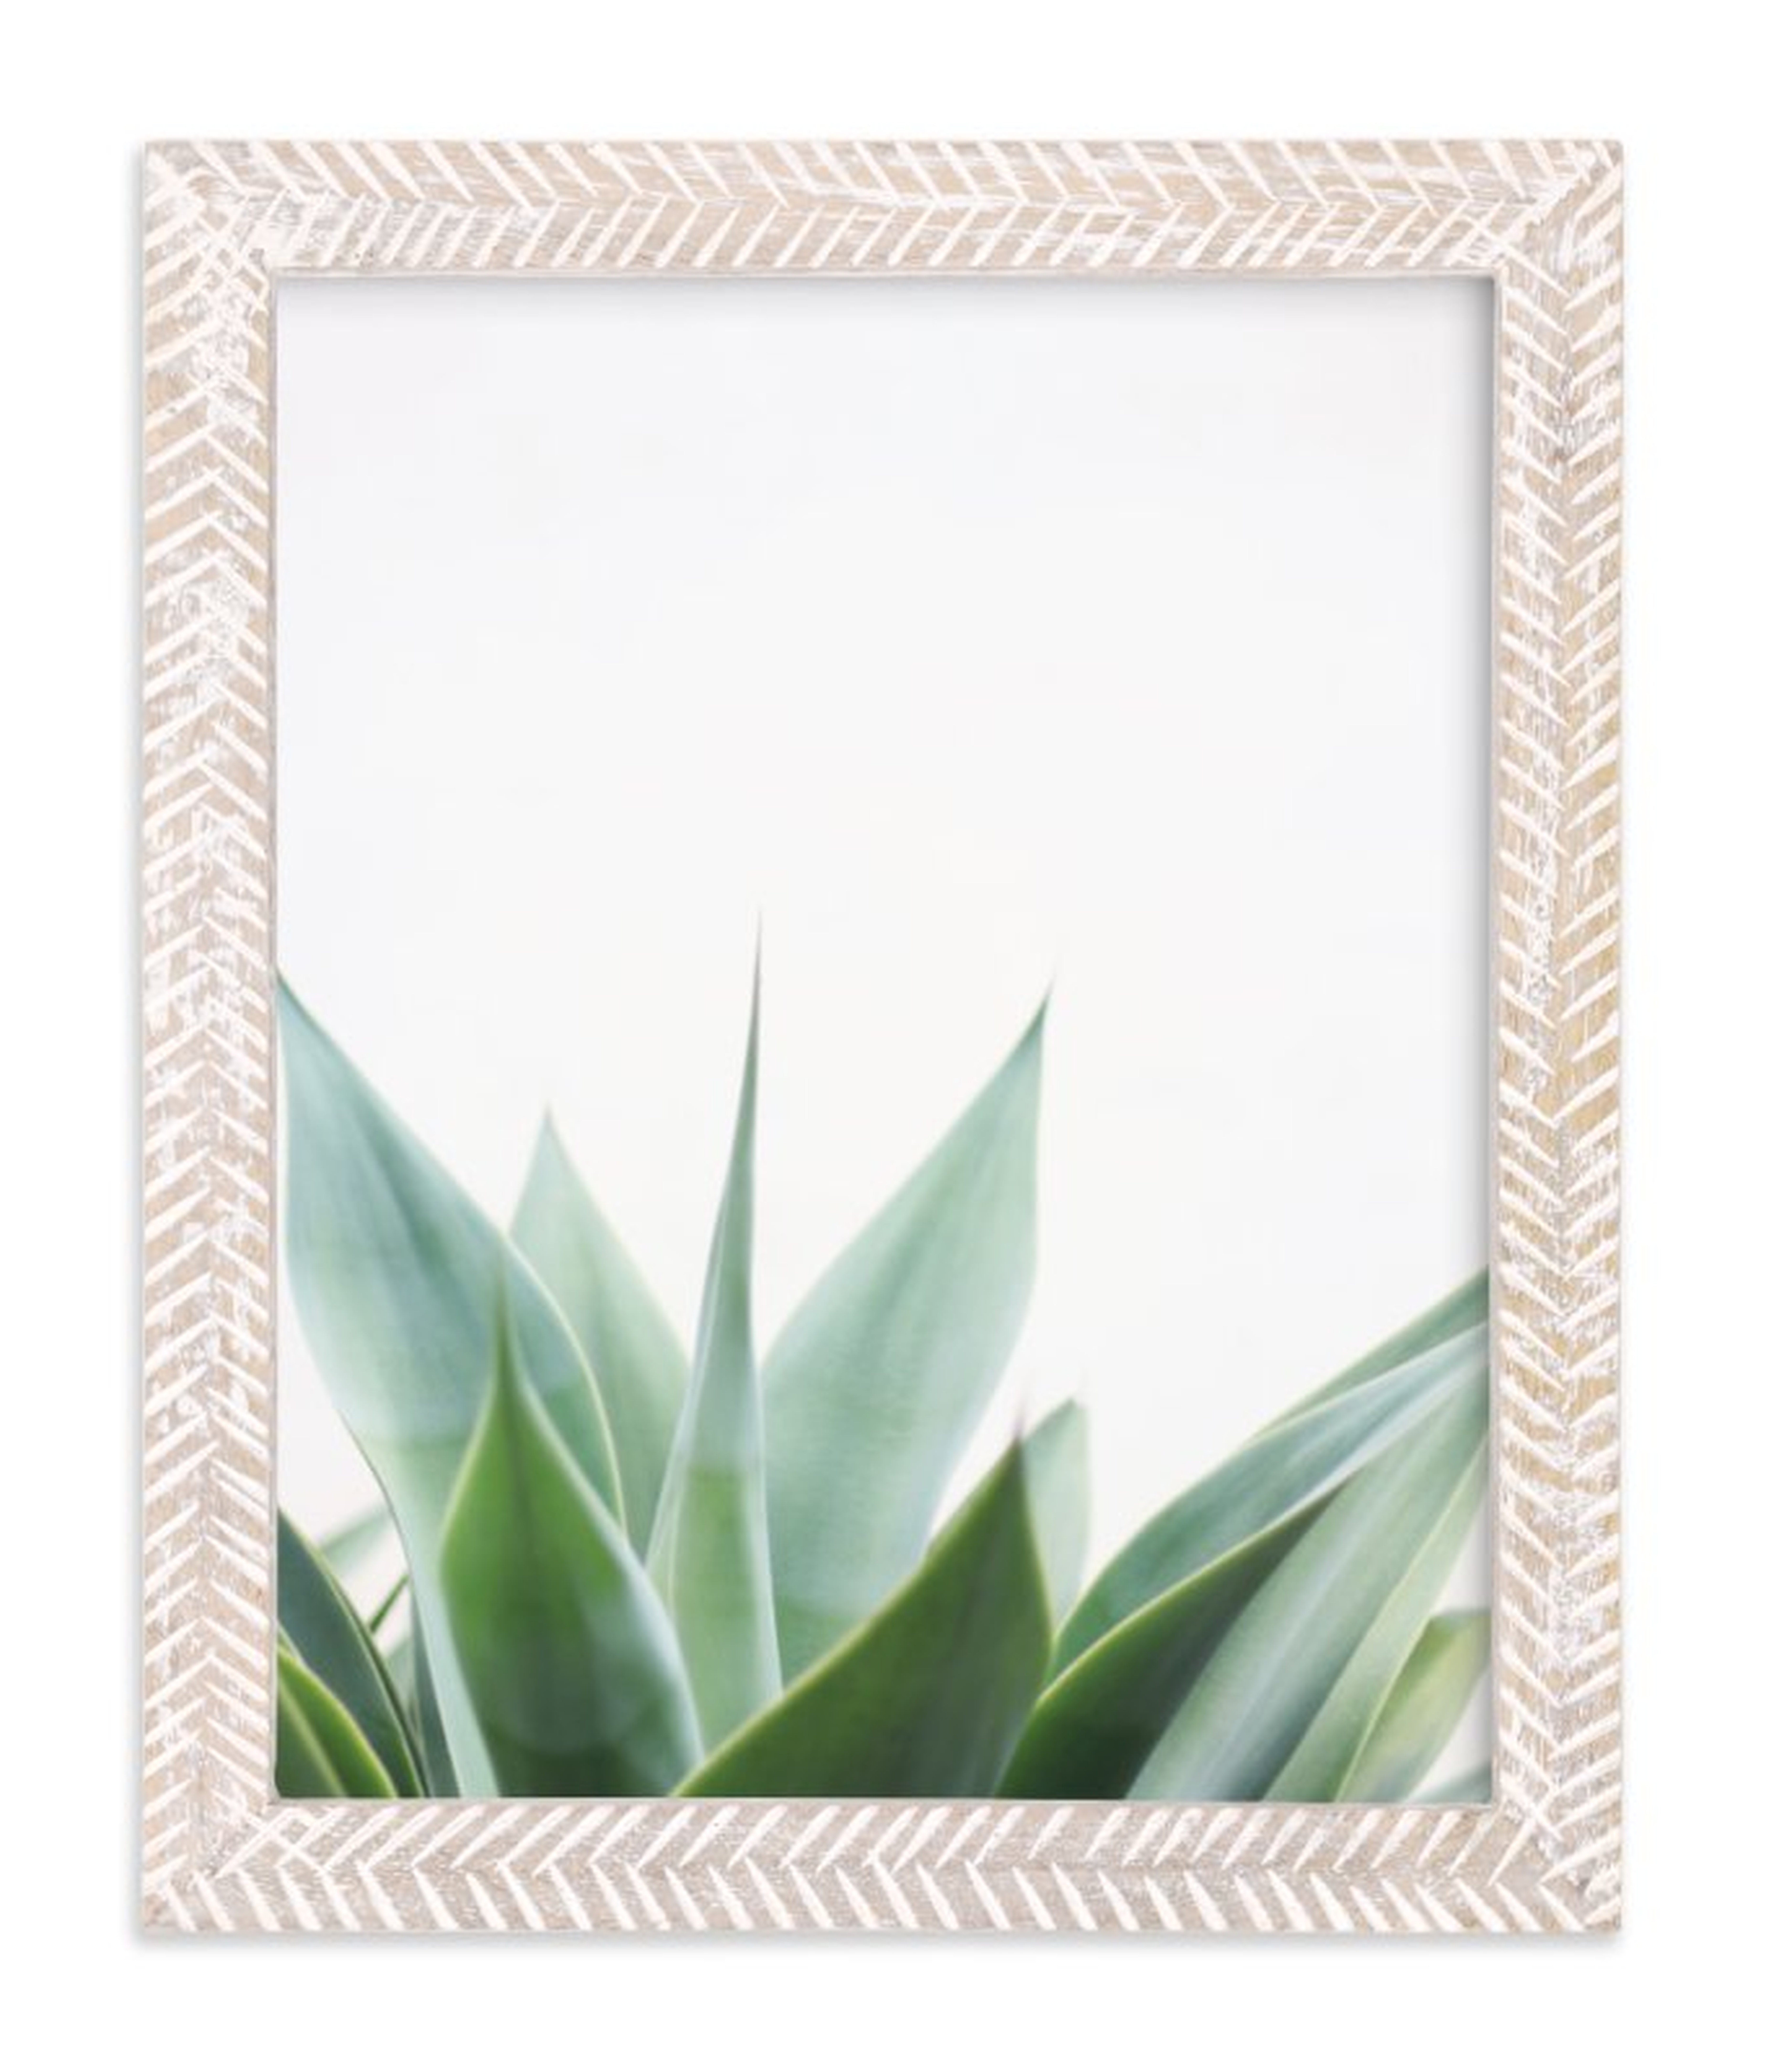 "balboa park" framed art print 8"x10" whitewashed herringbone frame - Minted